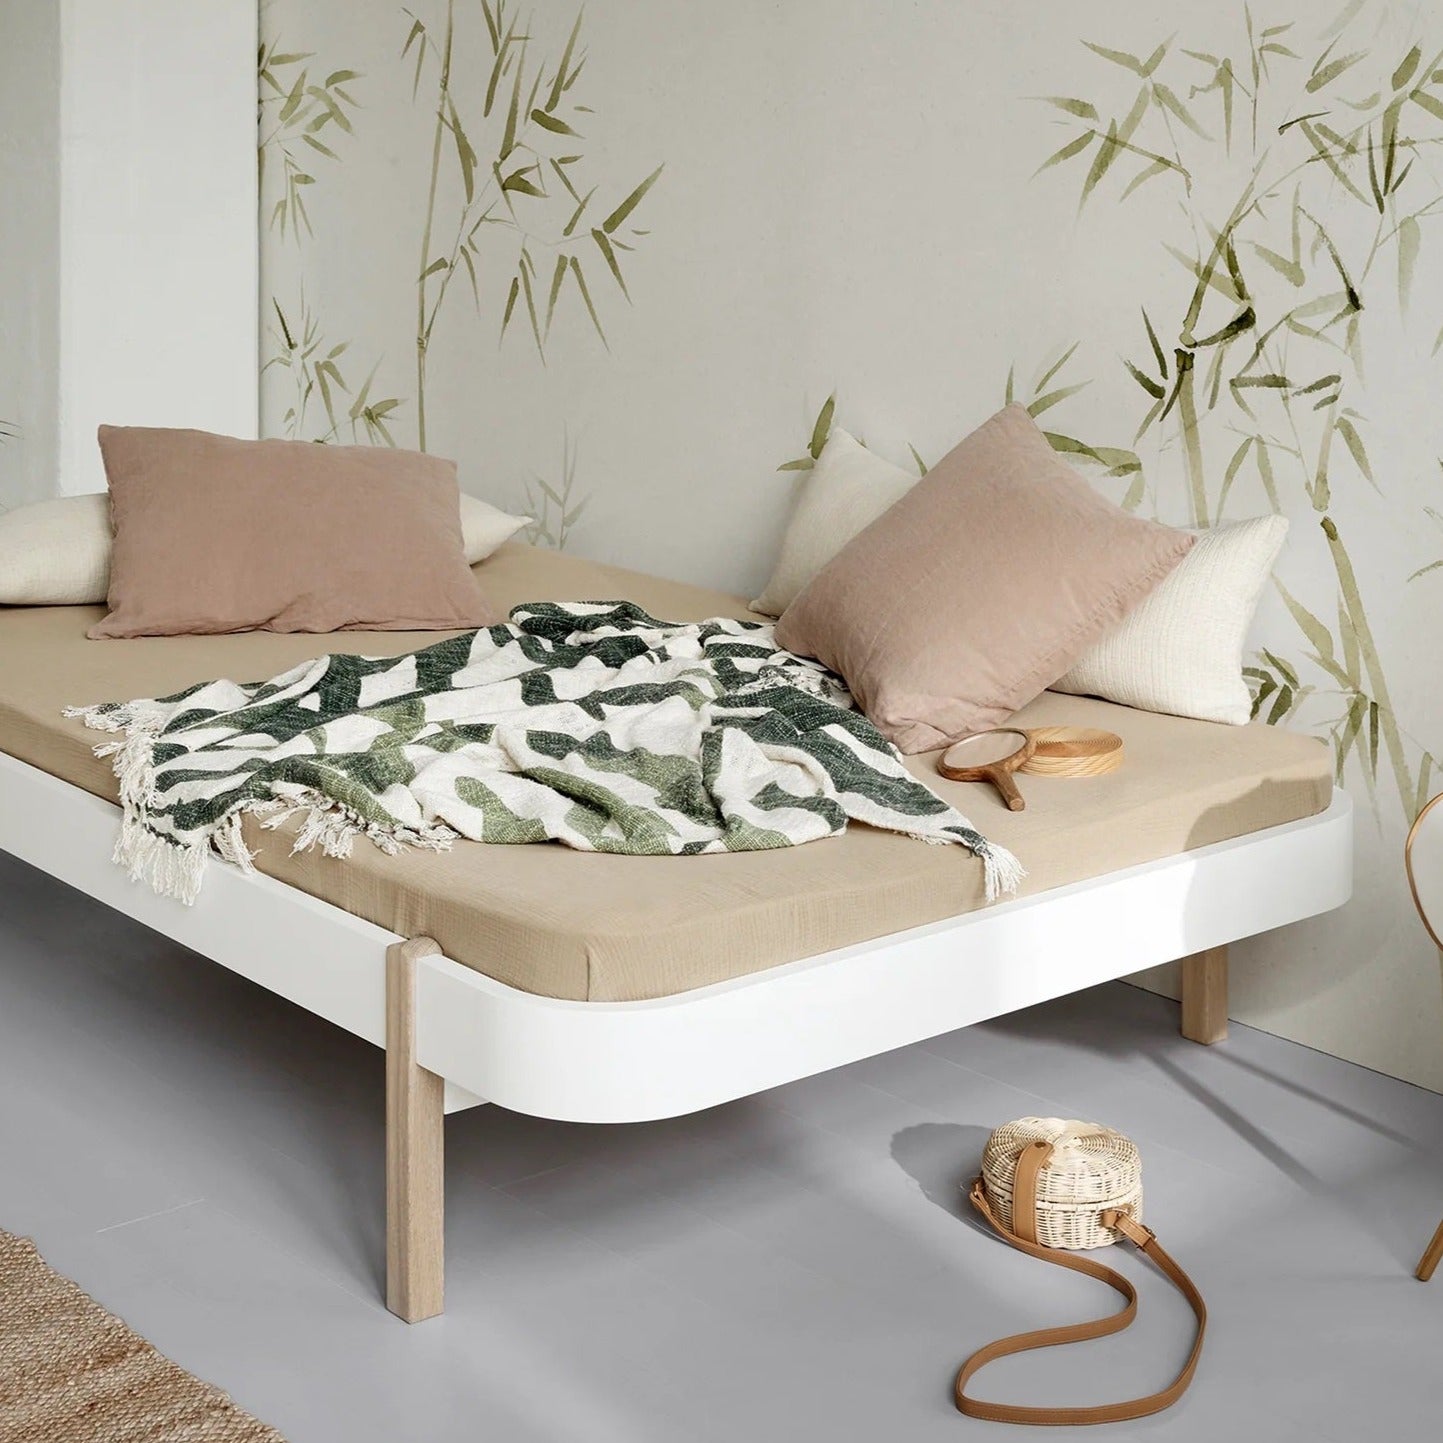 Oliver Furniture Wood Lounger Bed 120 - White/Oak